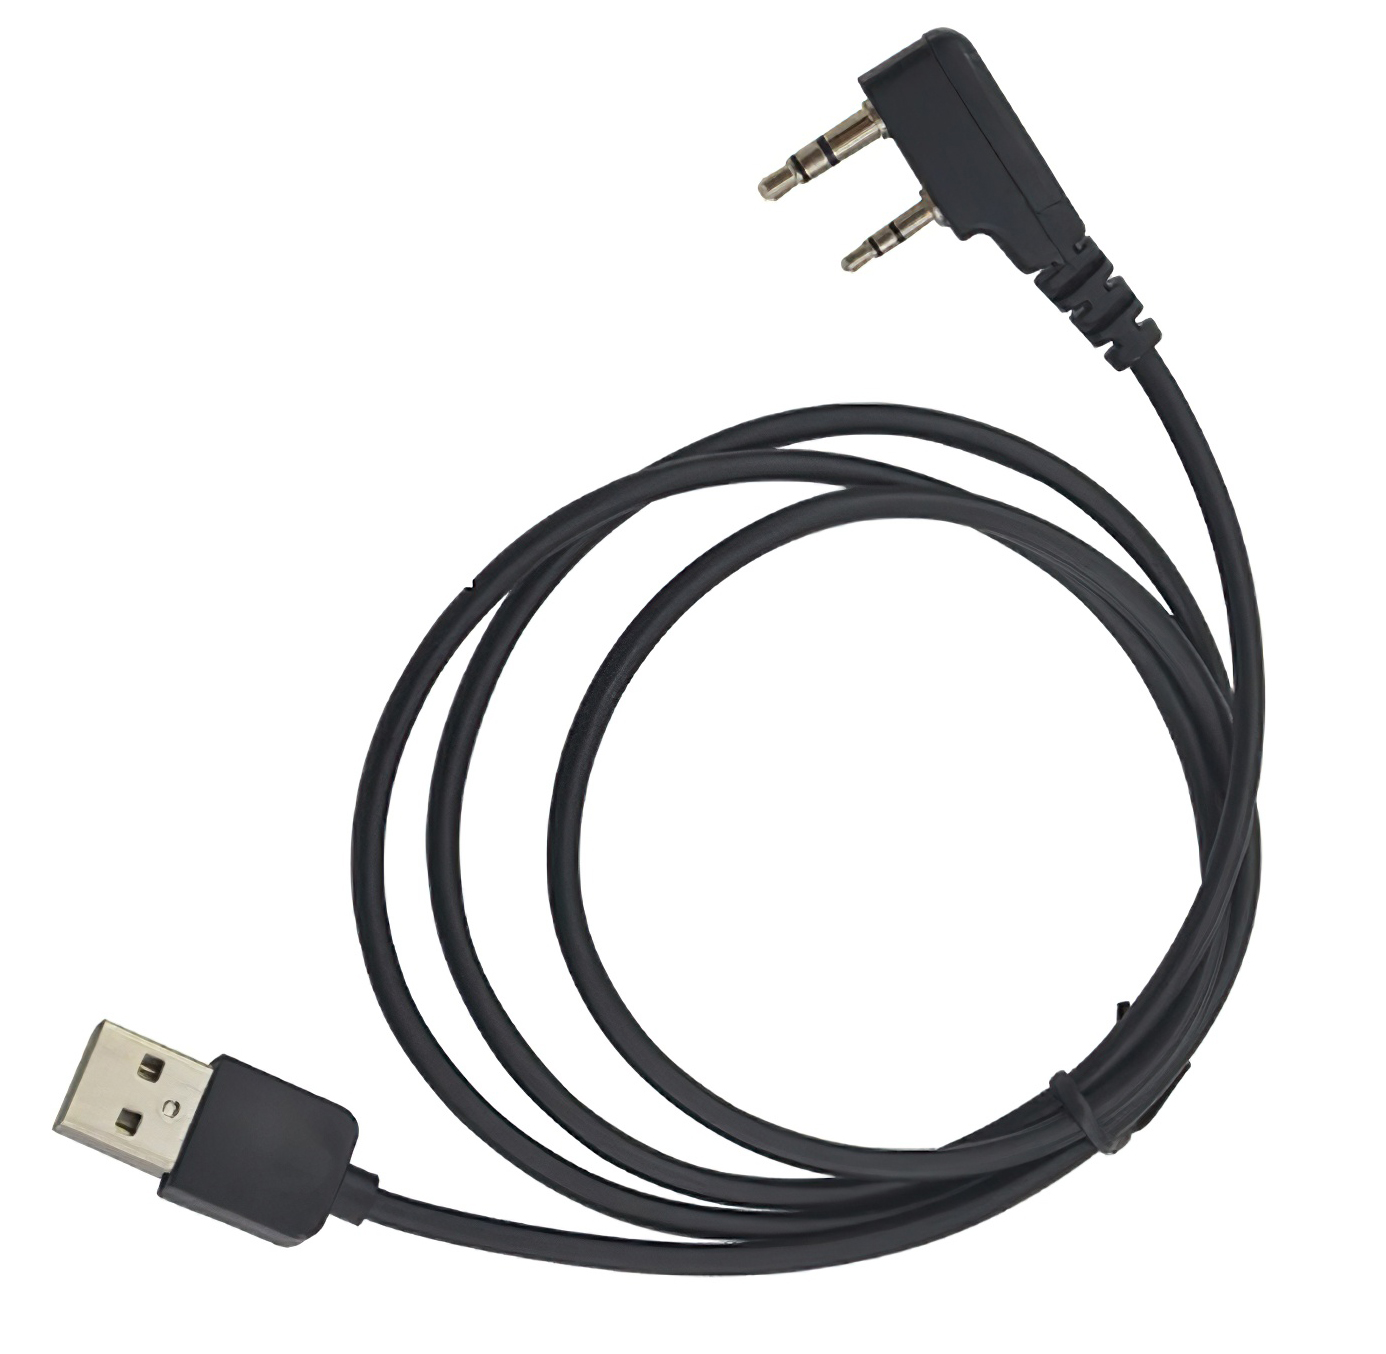 USB кабель для программирования цифровых радиостанций Baofeng DMR введение в теорию языков программирования